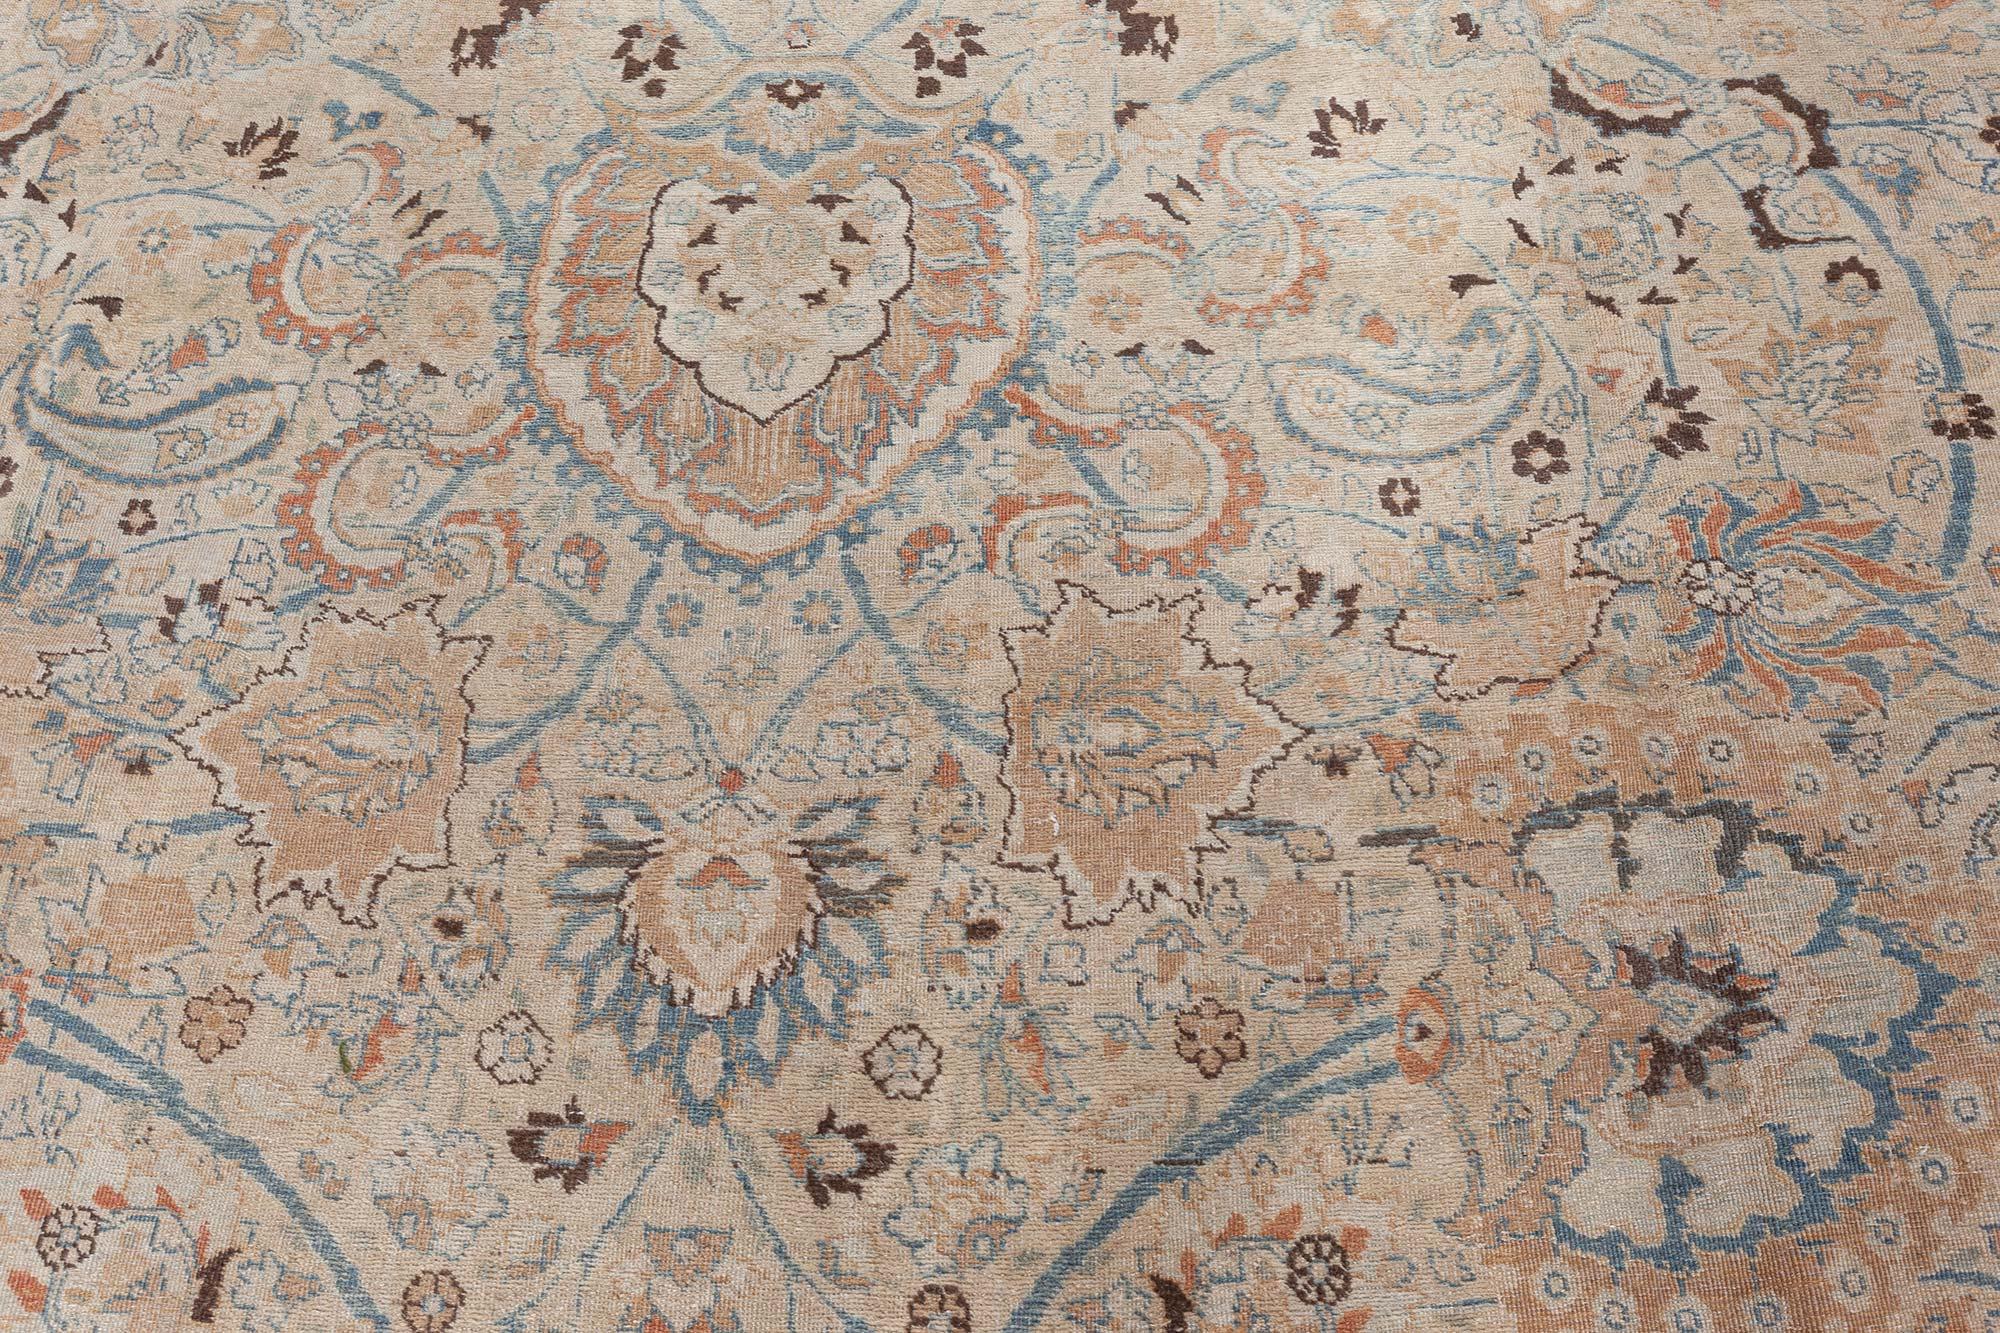 Antiker persischer Khorassan handgefertigter Wollteppich
Dieser antike persische Khorassan-Teppich aus der Zeit um 1920 zeigt ein kompliziertes Allover-Muster aus floralen Abstraktionen, Arabesken, Palmetten und geschwungenen Weinreben in Blau-,